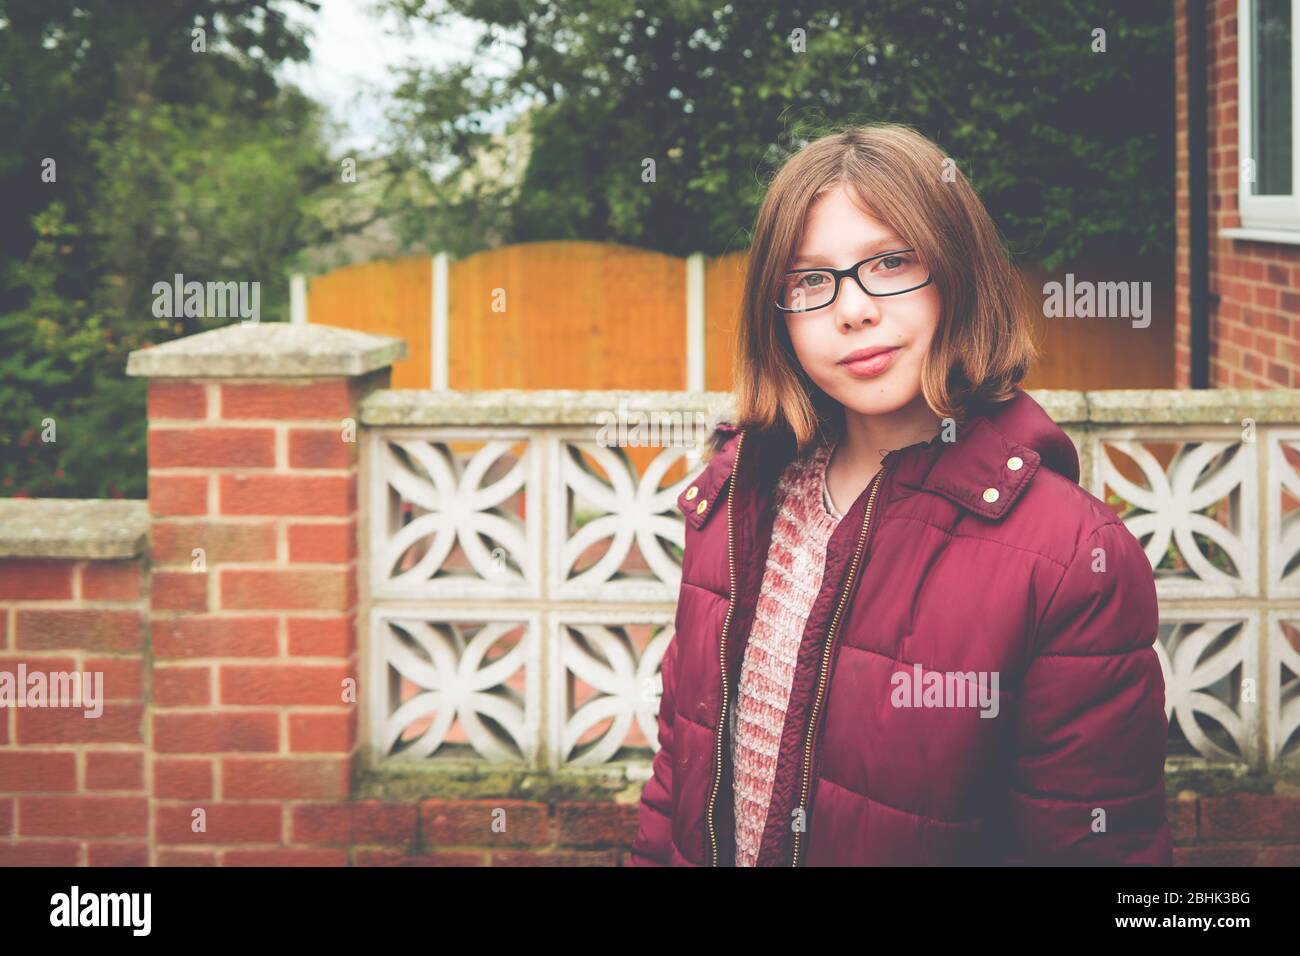 Auténtico retrato de jardín suburbano de una chica segura con bob corto, gafas y abrigo grueso Foto de stock